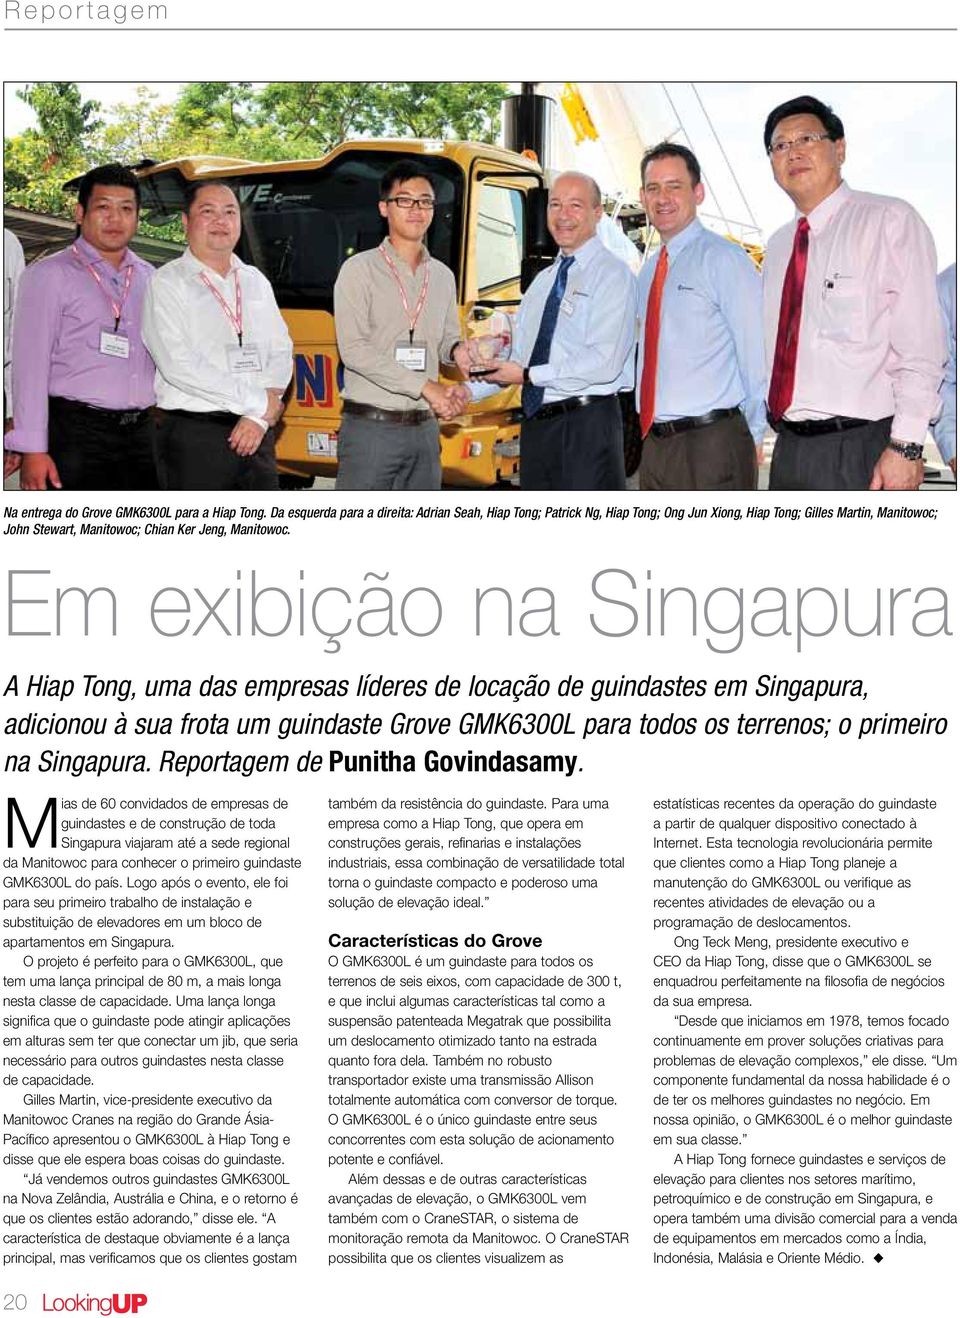 Em exibição na Singapura A Hiap Tong, uma das empresas líderes de locação de guindastes em Singapura, adicionou à sua frota um guindaste Grove GMK6300L para todos os terrenos; o primeiro na Singapura.